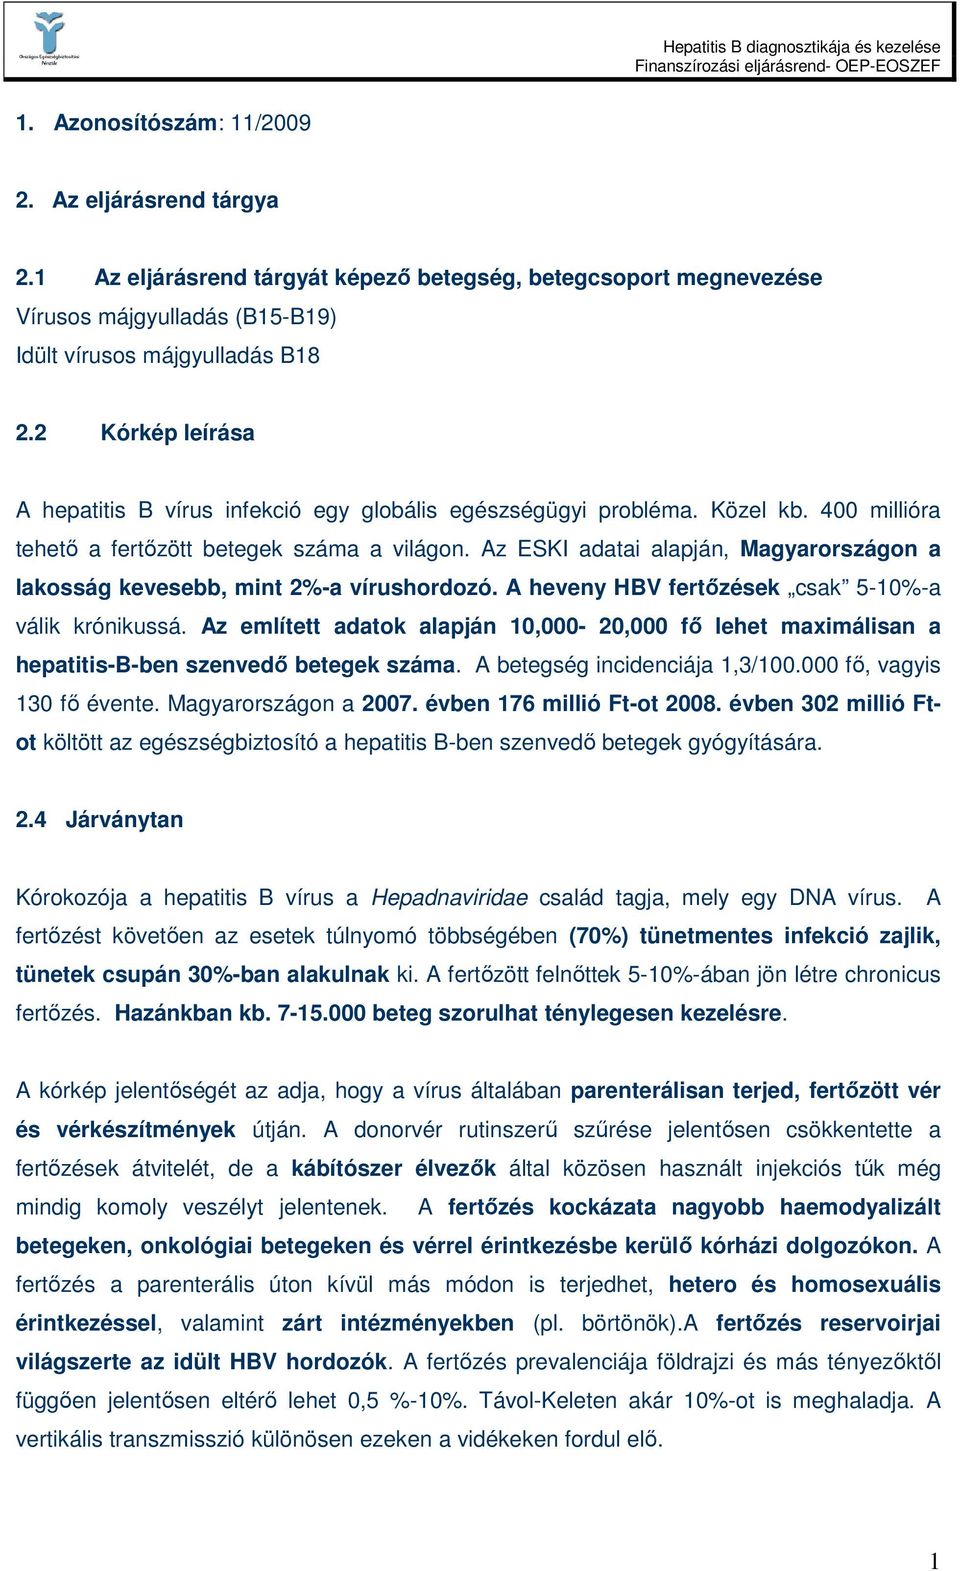 Az ESKI adatai alapján, Magyarországon a lakosság kevesebb, mint 2%-a vírushordozó. A heveny HBV fertızések csak 5-10%-a válik krónikussá.